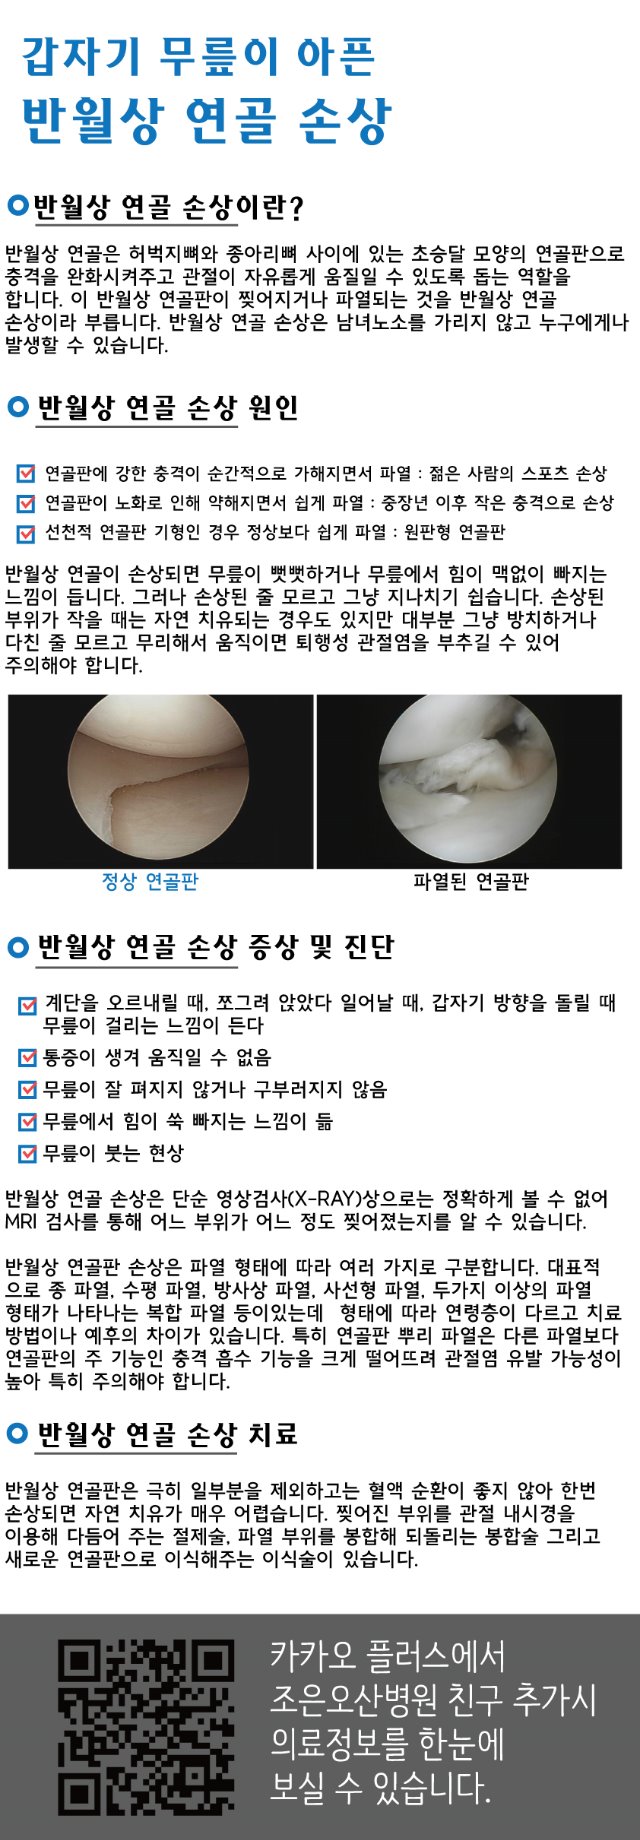 조은오산병원-반월상연골손상.jpg